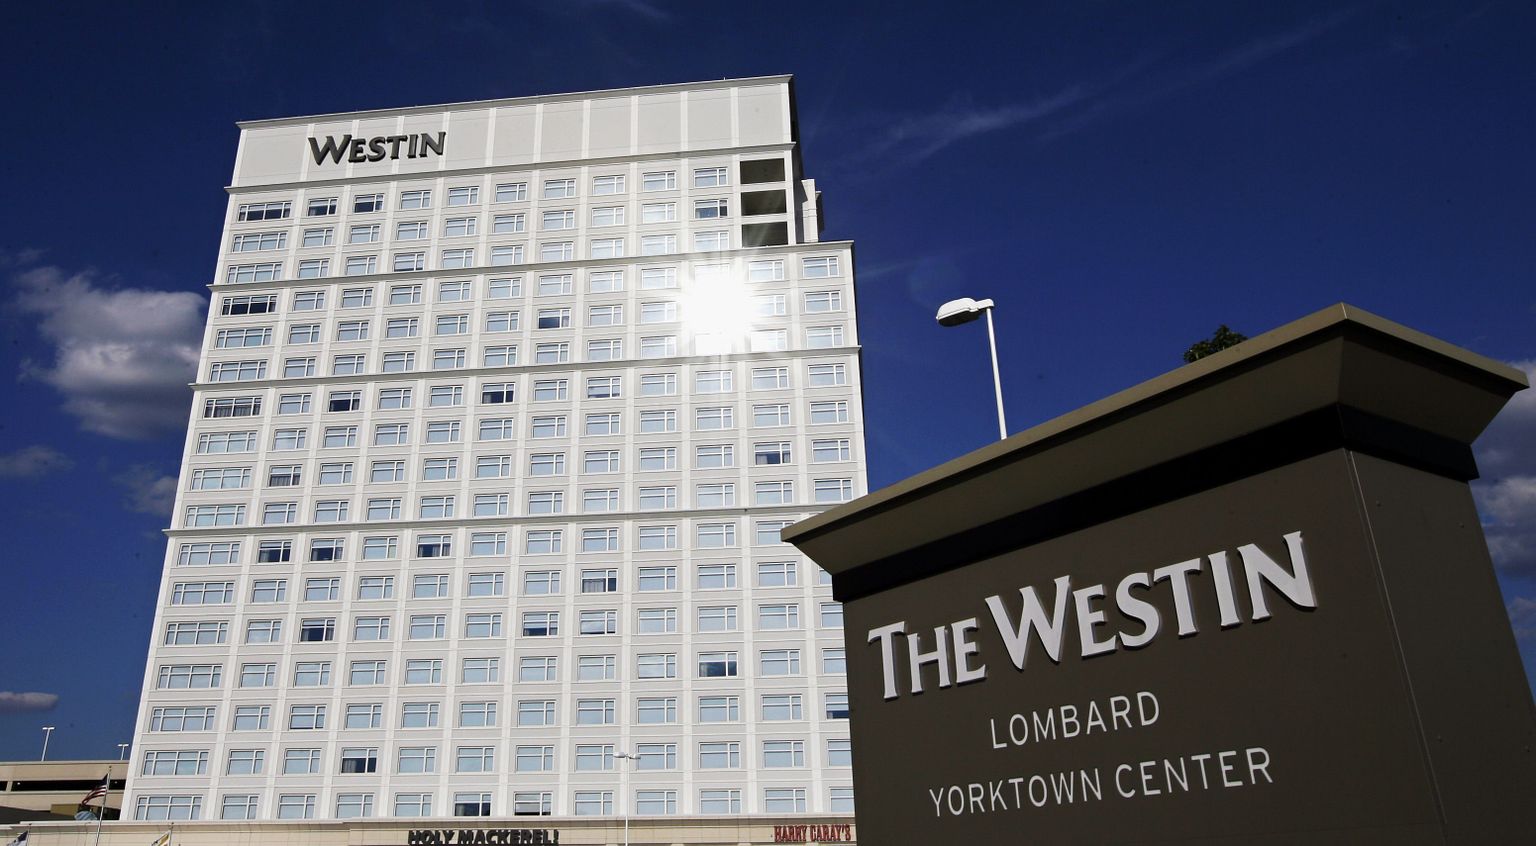 Starwoodi kuuluvad ka Westini kaubamärgi hotellid.